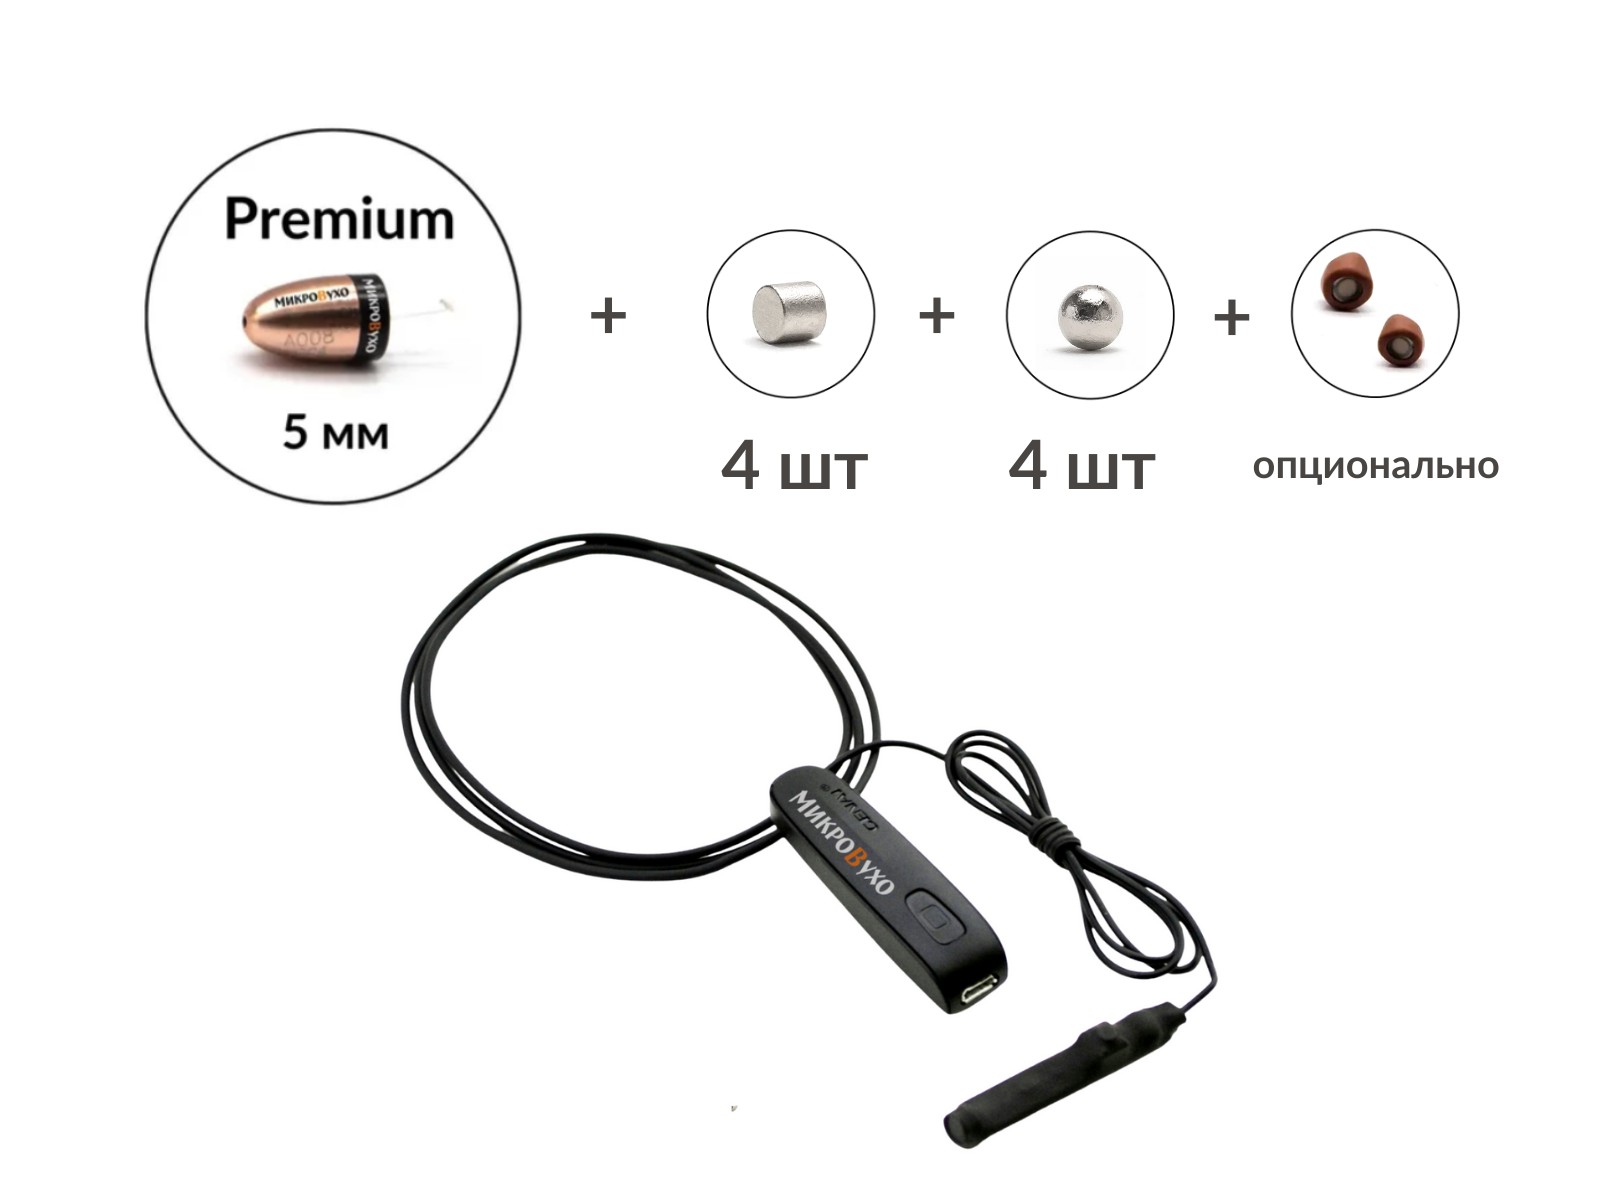 Универсальная гарнитура Bluetooth Basic с капсулой Premium и магнитами 2 мм - изображение 16